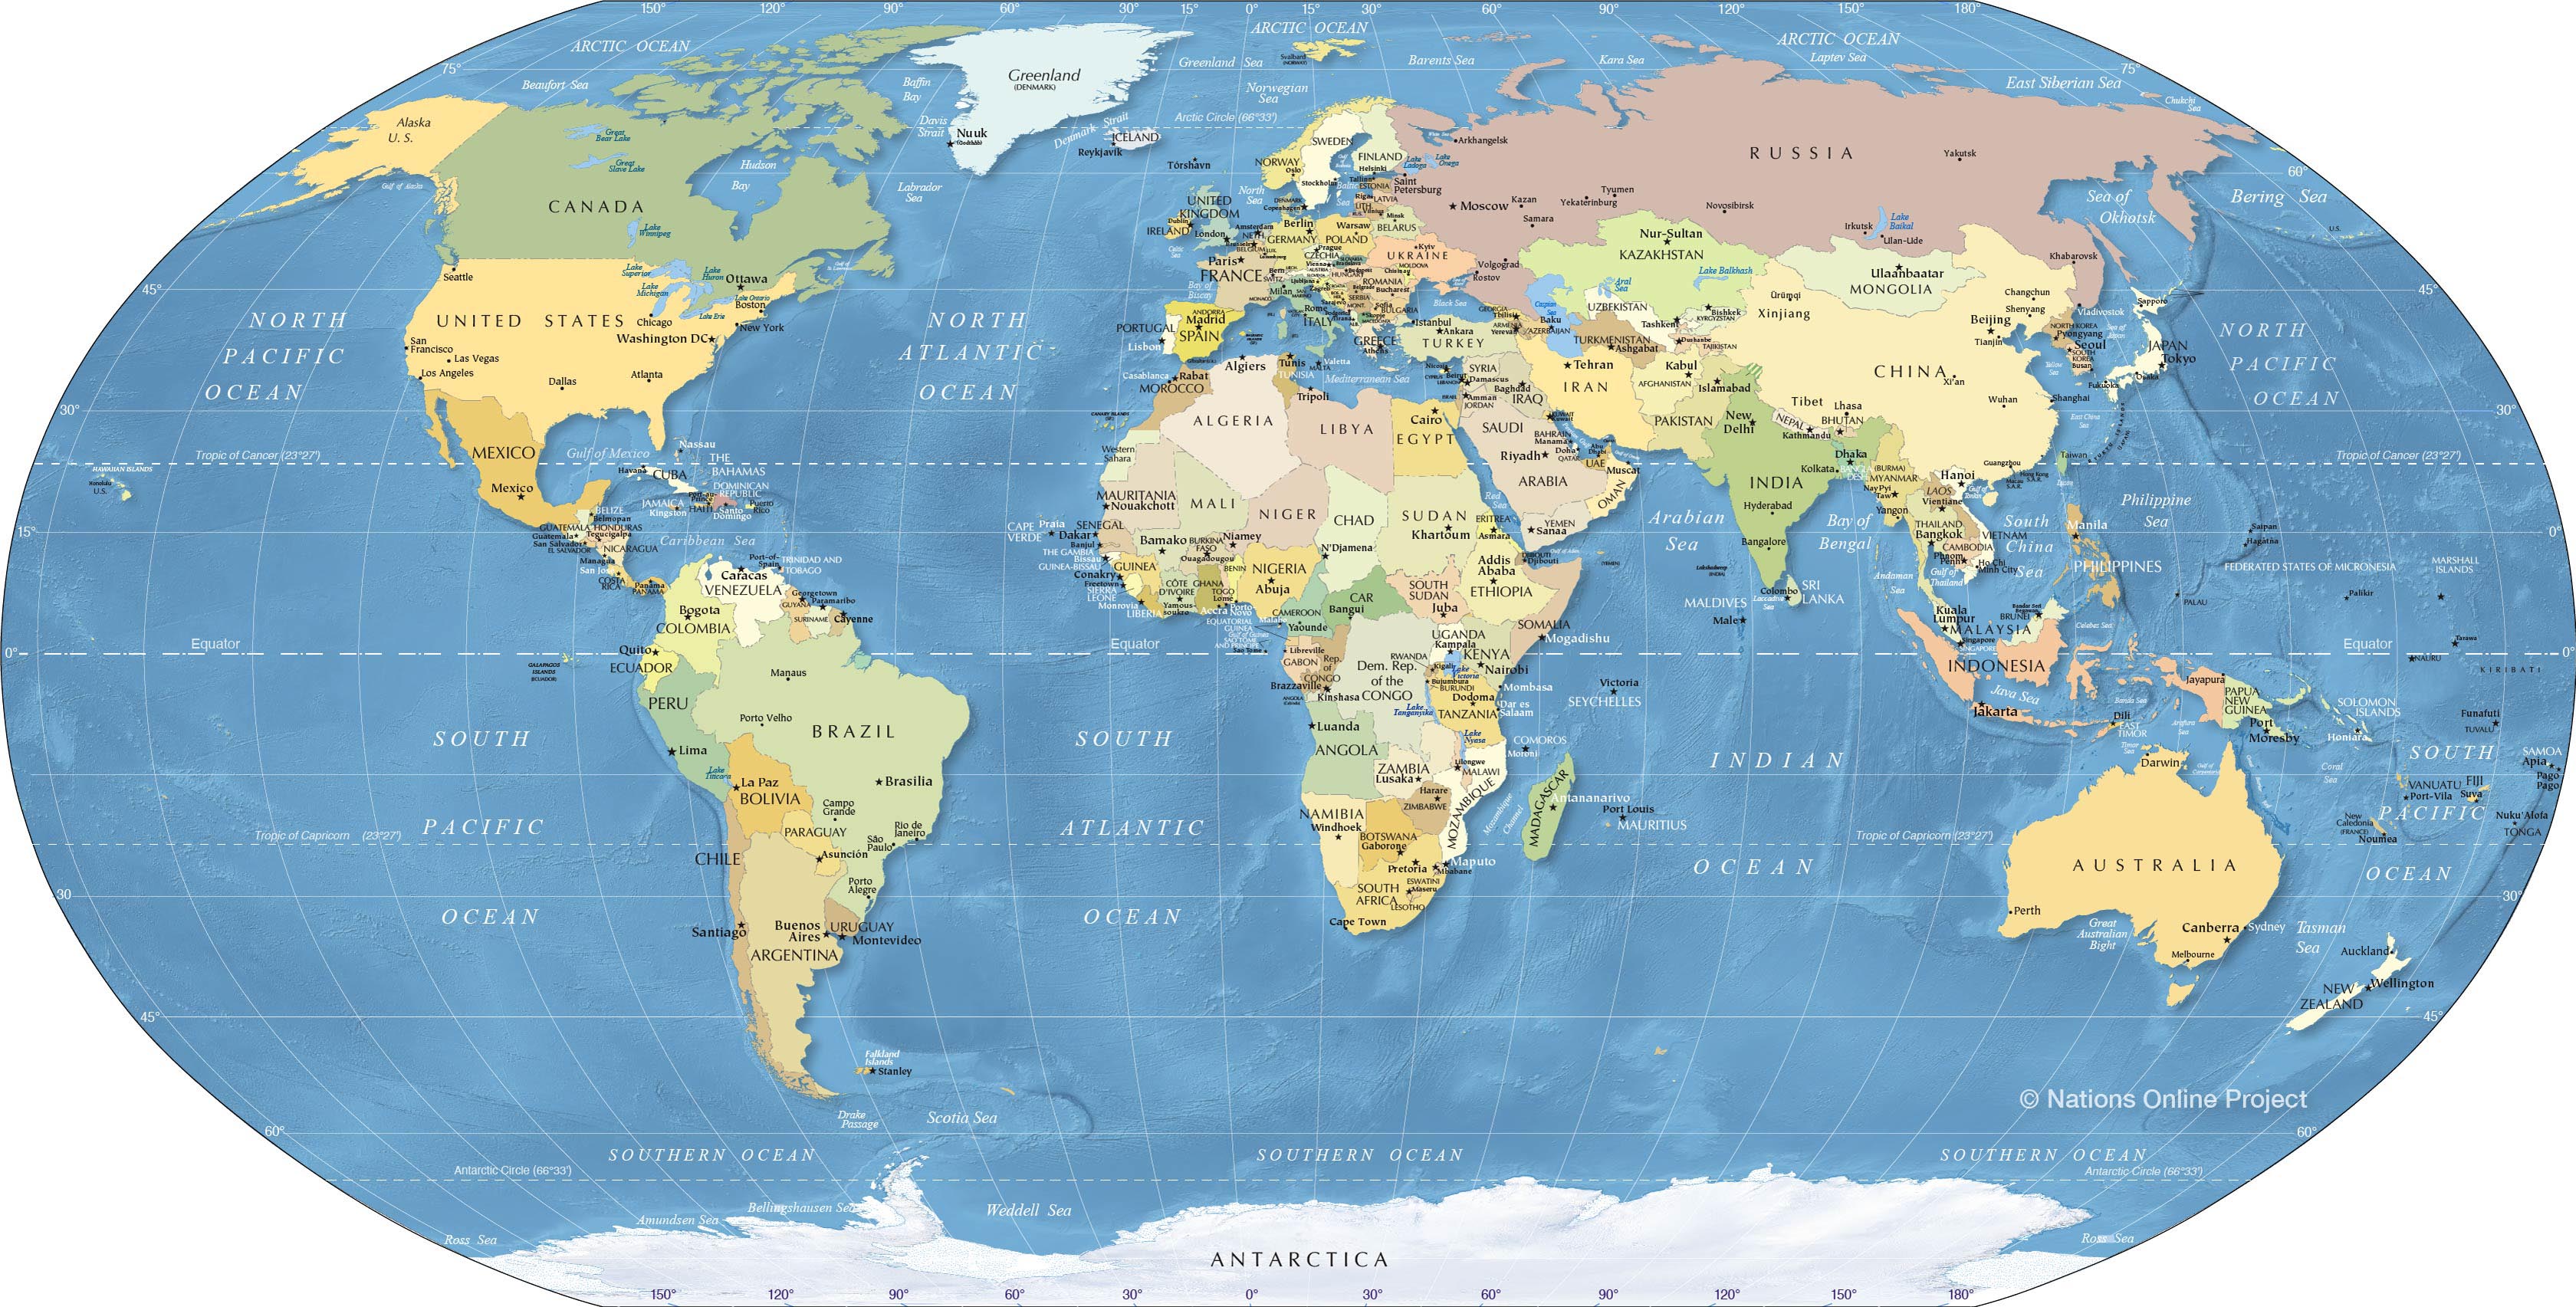 Khám phá thế giới với bản đồ 3D khổ lớn full HD tràn đầy màu sắc và chi tiết đến từng đất nước và vị trí trên thế giới. Điều đặc biệt là bạn sẽ được trải nghiệm không chỉ đây là một bản đồ thô sơ, mà là một tác phẩm nghệ thuật kết hợp văn hóa và kiến trúc của các quốc gia, tạo ra sự đa dạng và phong phú cho bản đồ.